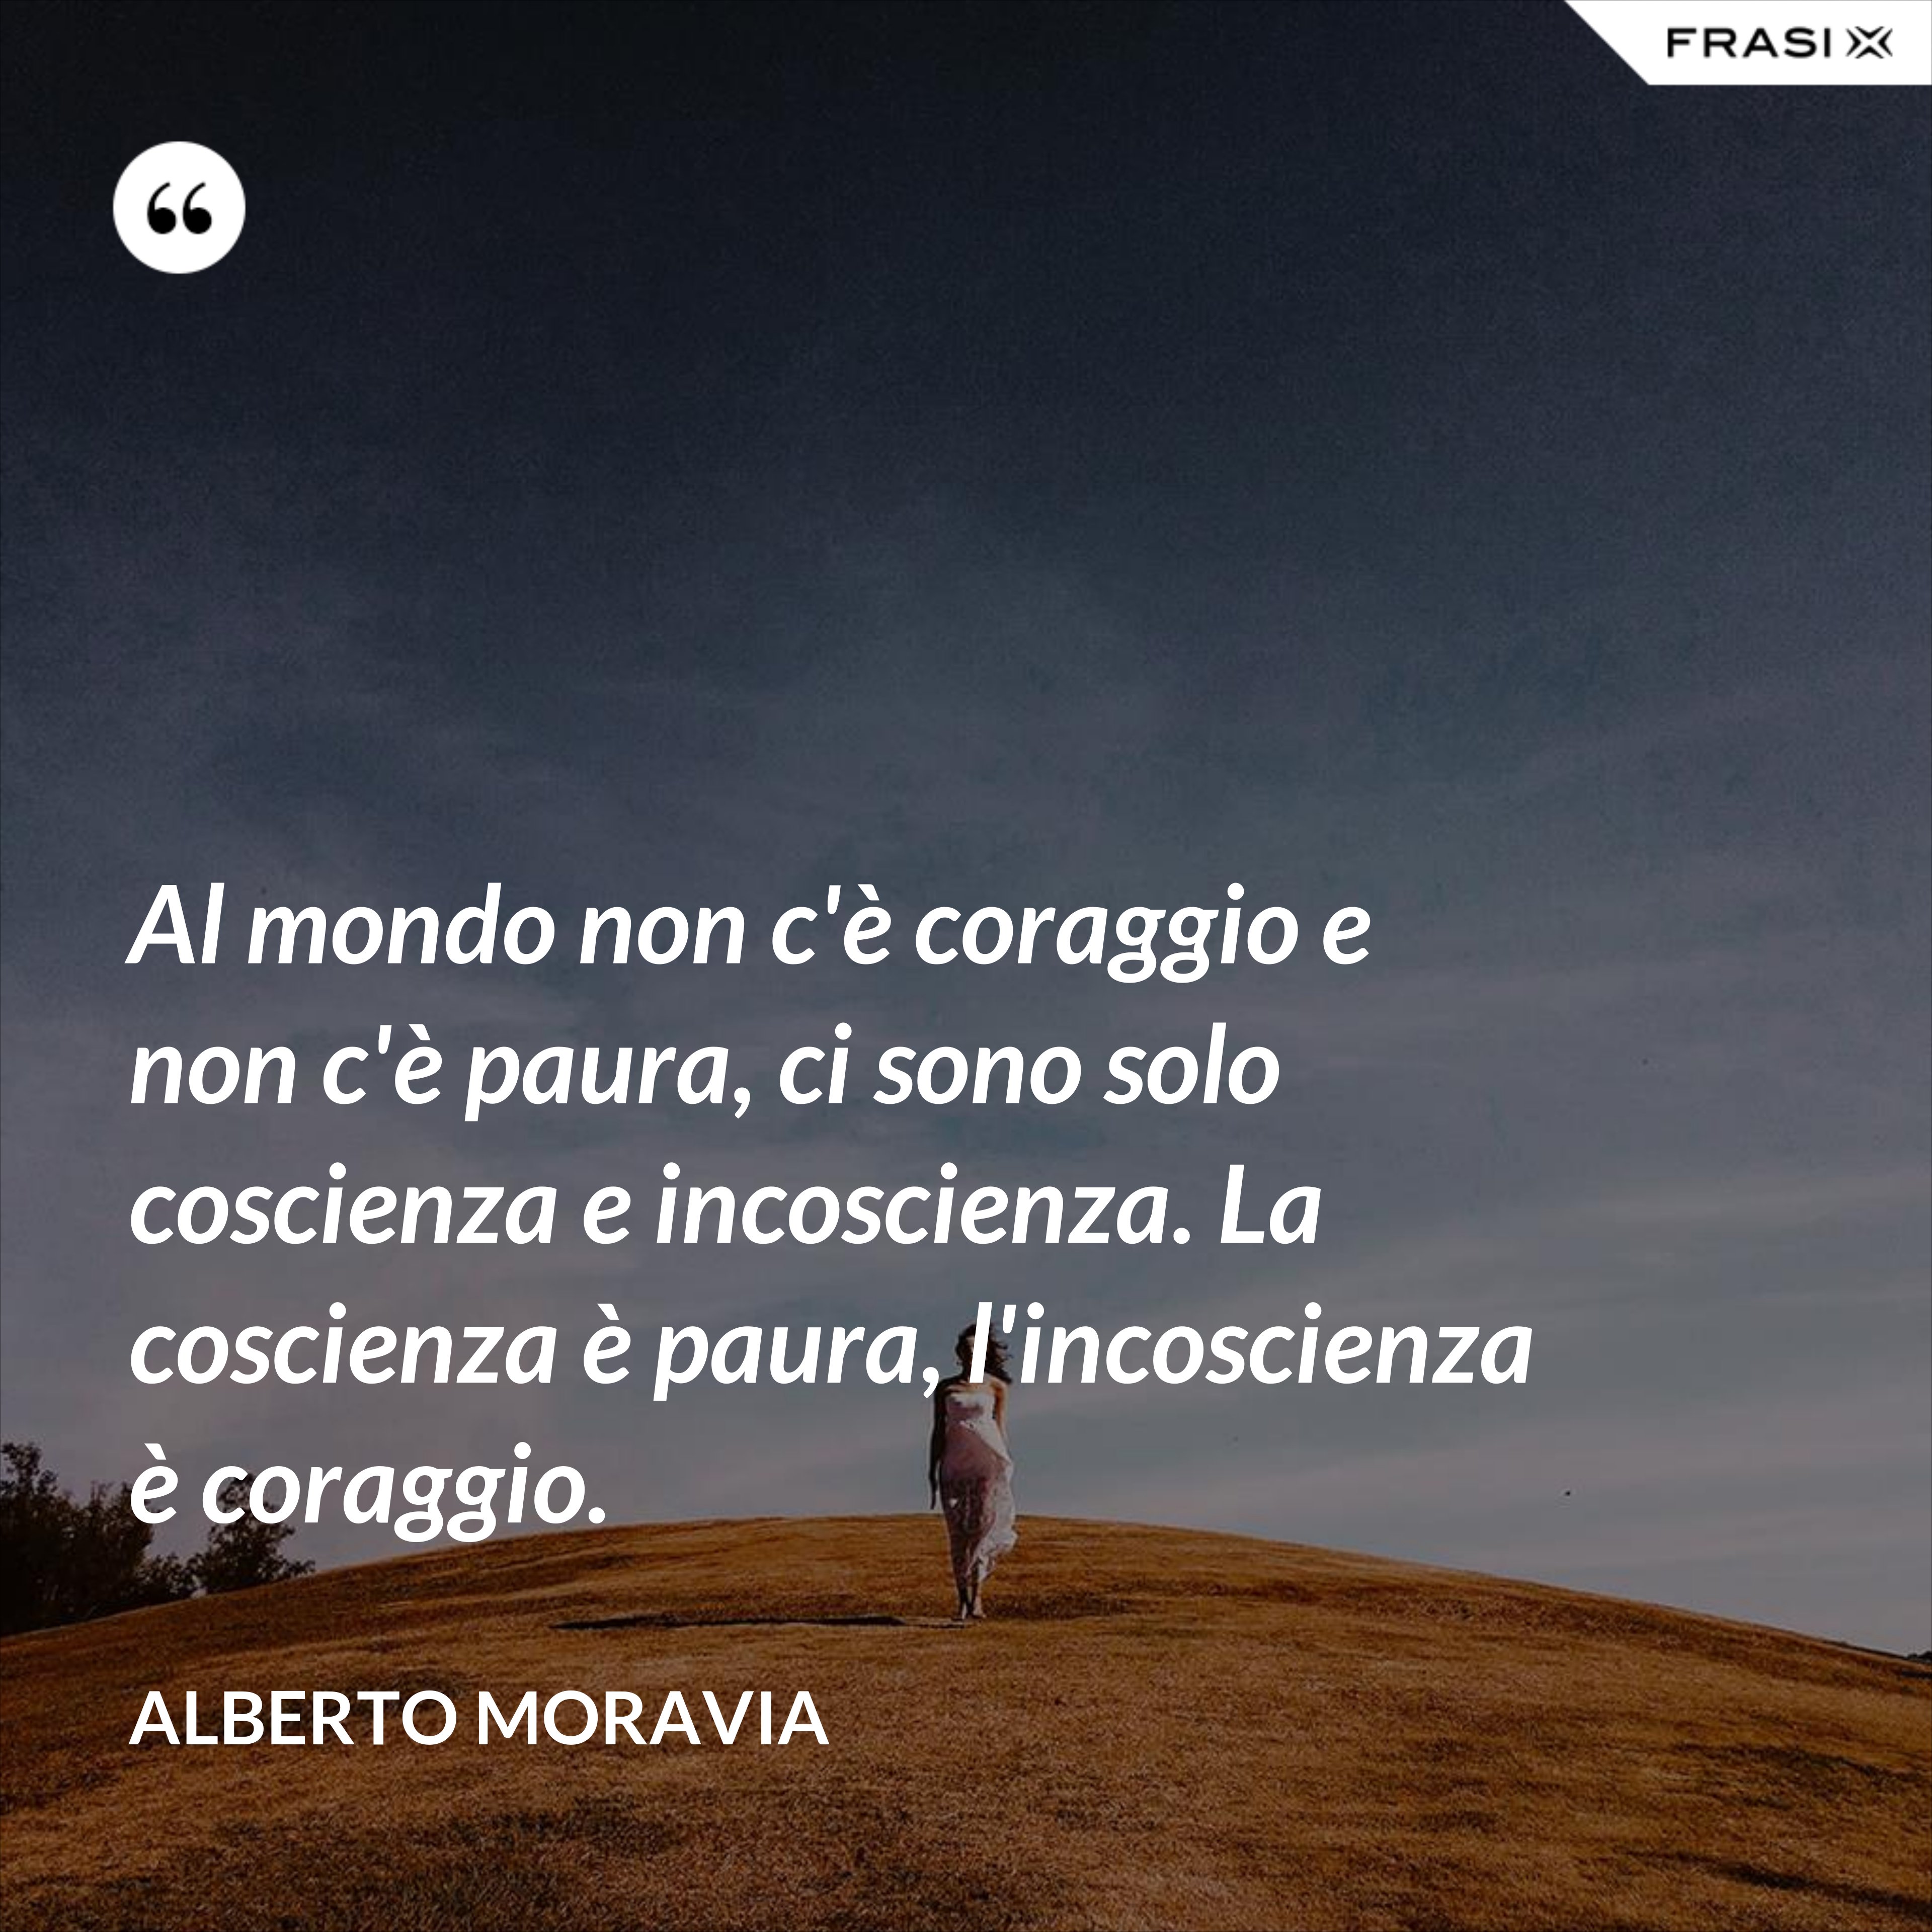 Al mondo non c'è coraggio e non c'è paura, ci sono solo coscienza e incoscienza. La coscienza è paura, l'incoscienza è coraggio. - Alberto Moravia